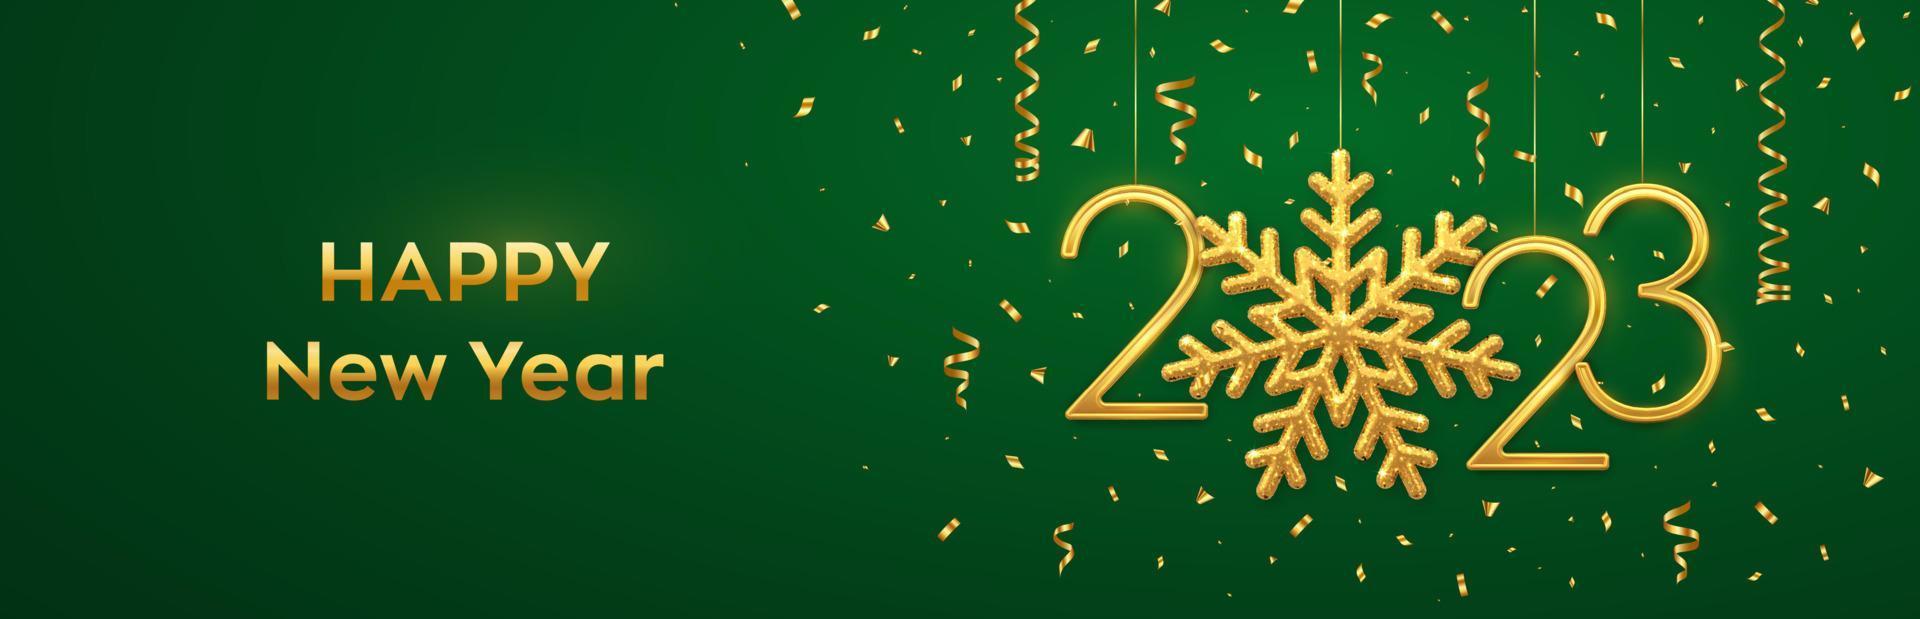 Frohes neues Jahr 2023. hängende goldene metallische zahlen 2023 mit glänzender schneeflocke und konfetti auf grünem hintergrund. neujahrsgrußkarte oder bannervorlage. Feiertagsdekoration. Vektor-Illustration. vektor